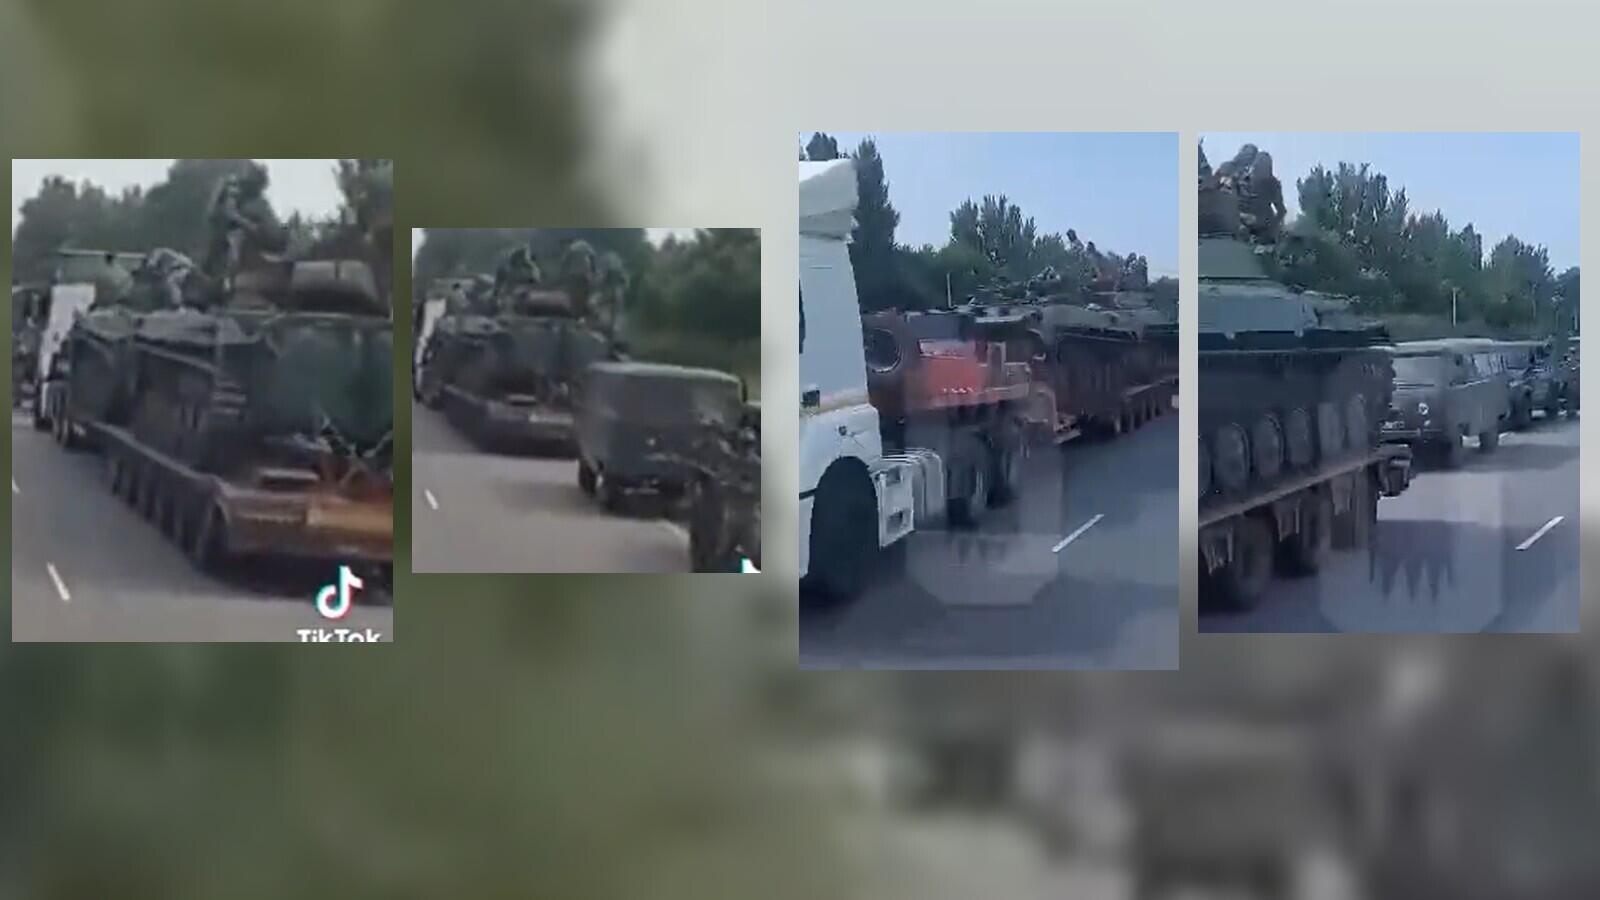 Die beiden Bilder links sind Standbilder aus dem viralen Video, während das Bild rechts den bewaffneten Aufstand zeigt.  Auf beiden ist ein weißer Lastwagen mit zwei Panzern zu sehen, gefolgt von einem grauen Lastwagen.